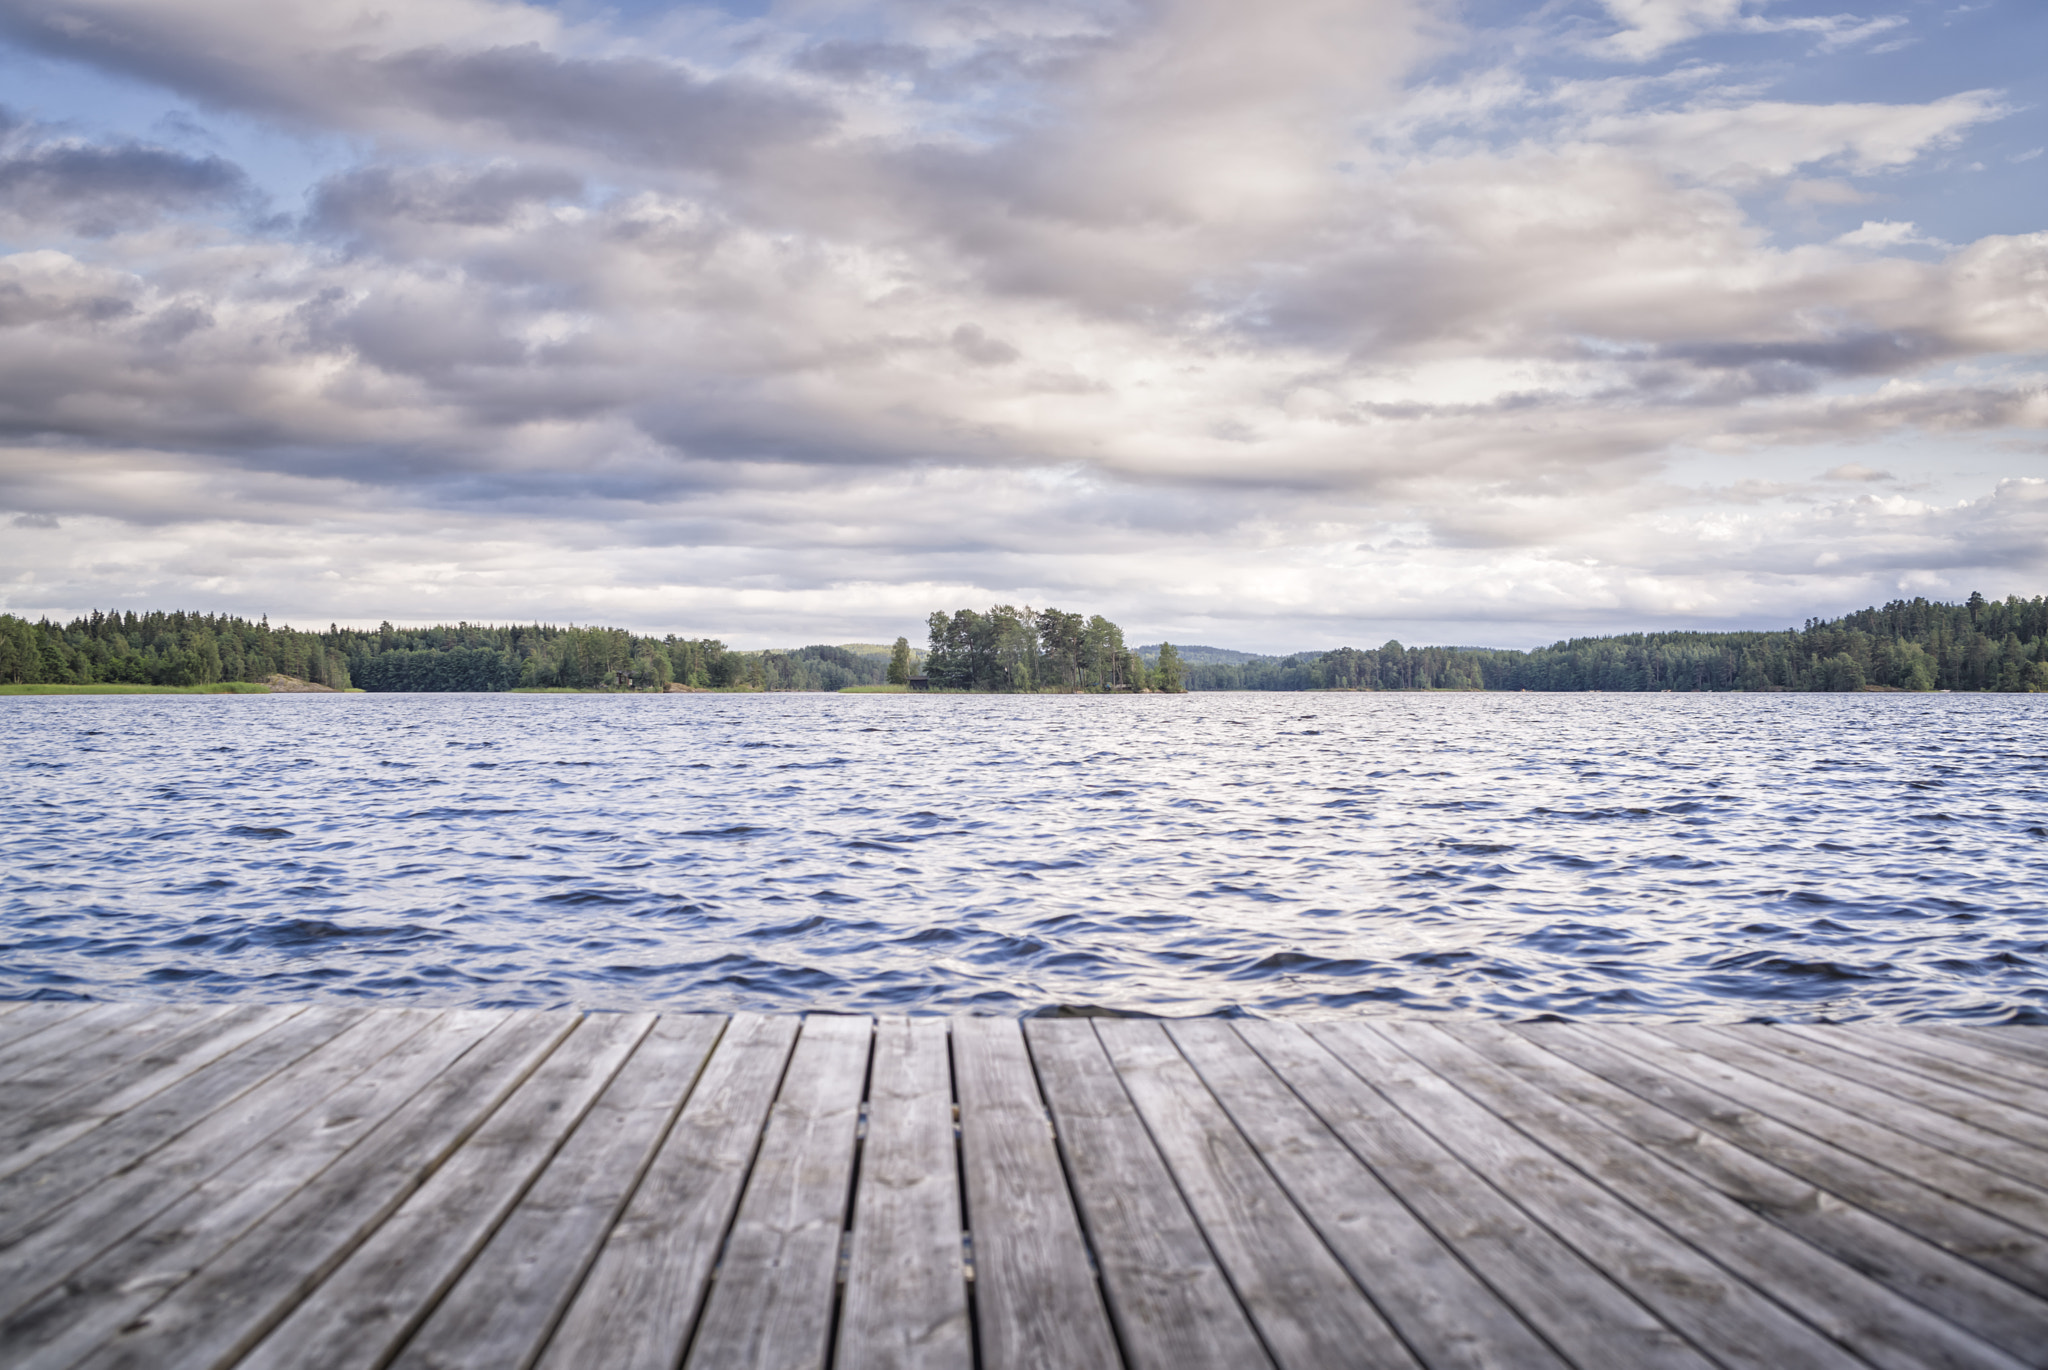 AF Zoom-Nikkor 35-70mm f/2.8 sample photo. Sweden lakes photography